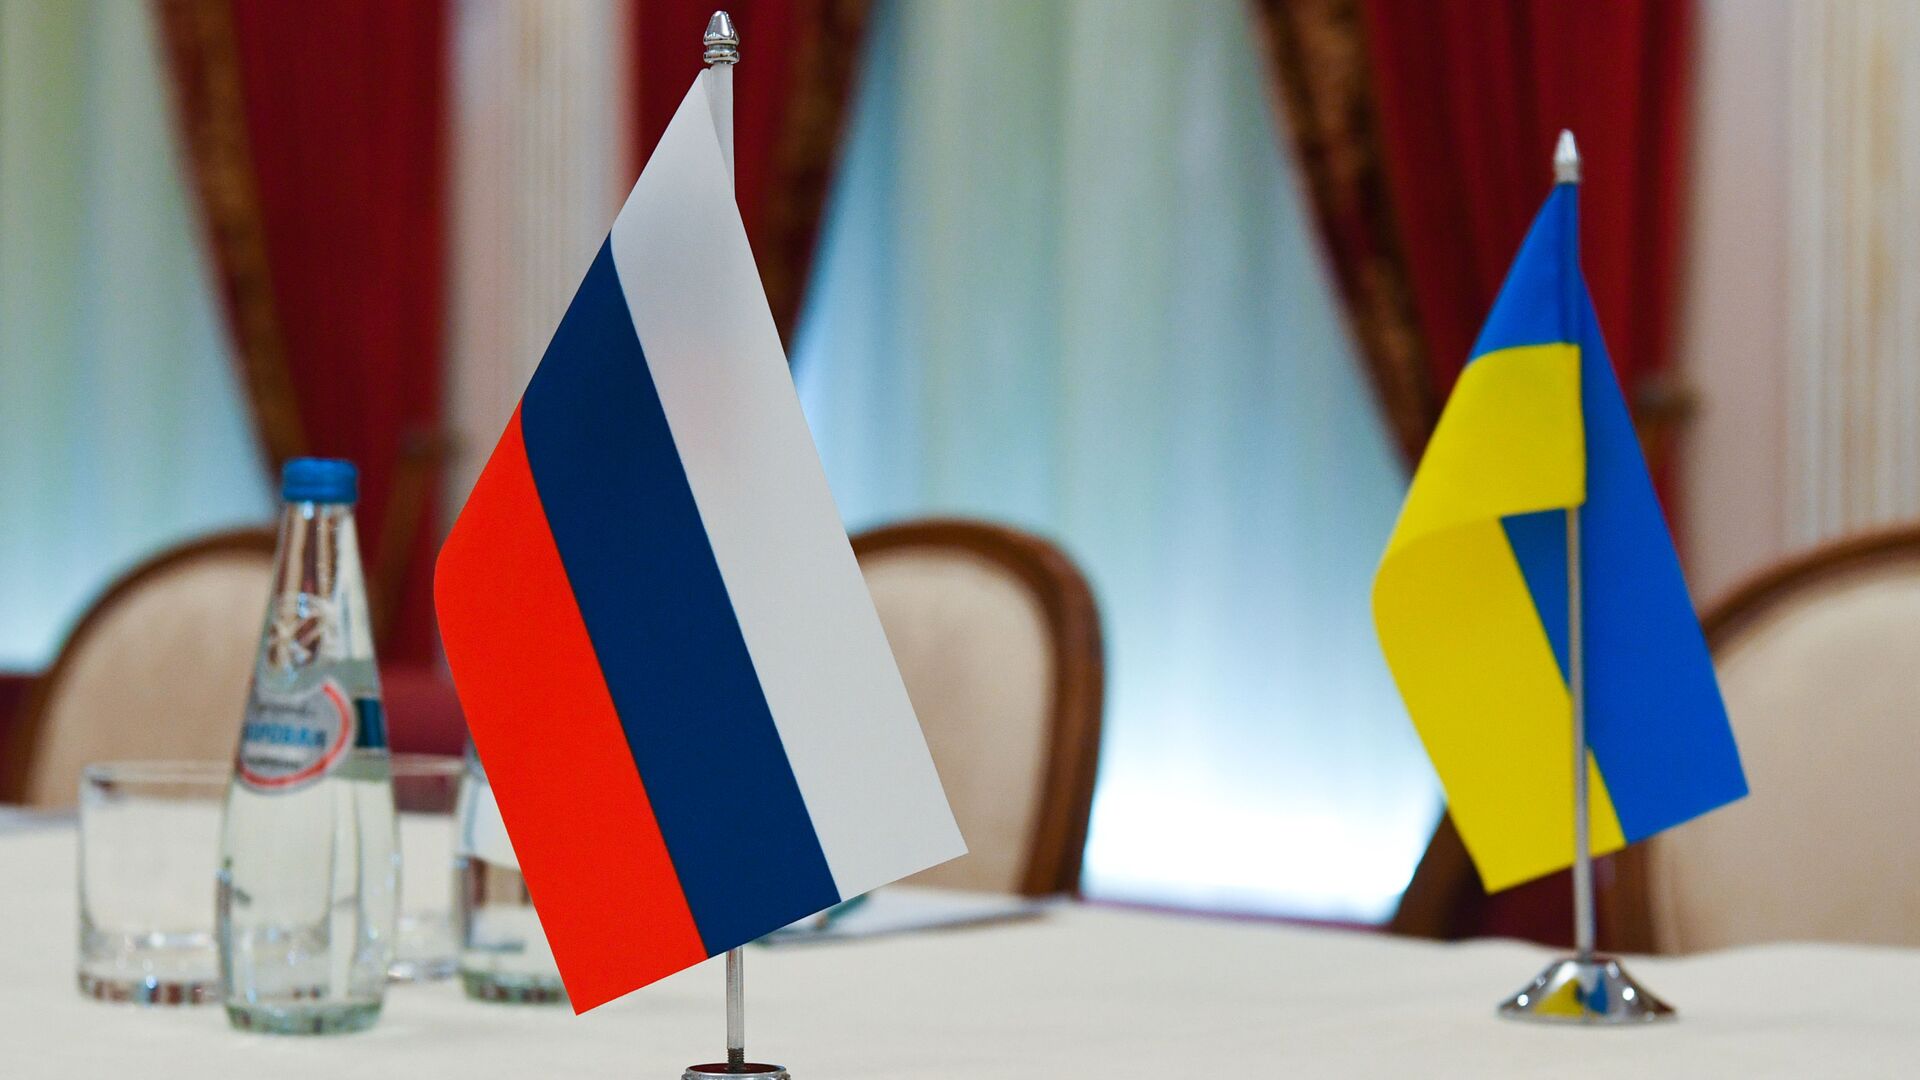 Флаги России и Украины в зале, где пройдут переговоры - Sputnik Таджикистан, 1920, 02.03.2022